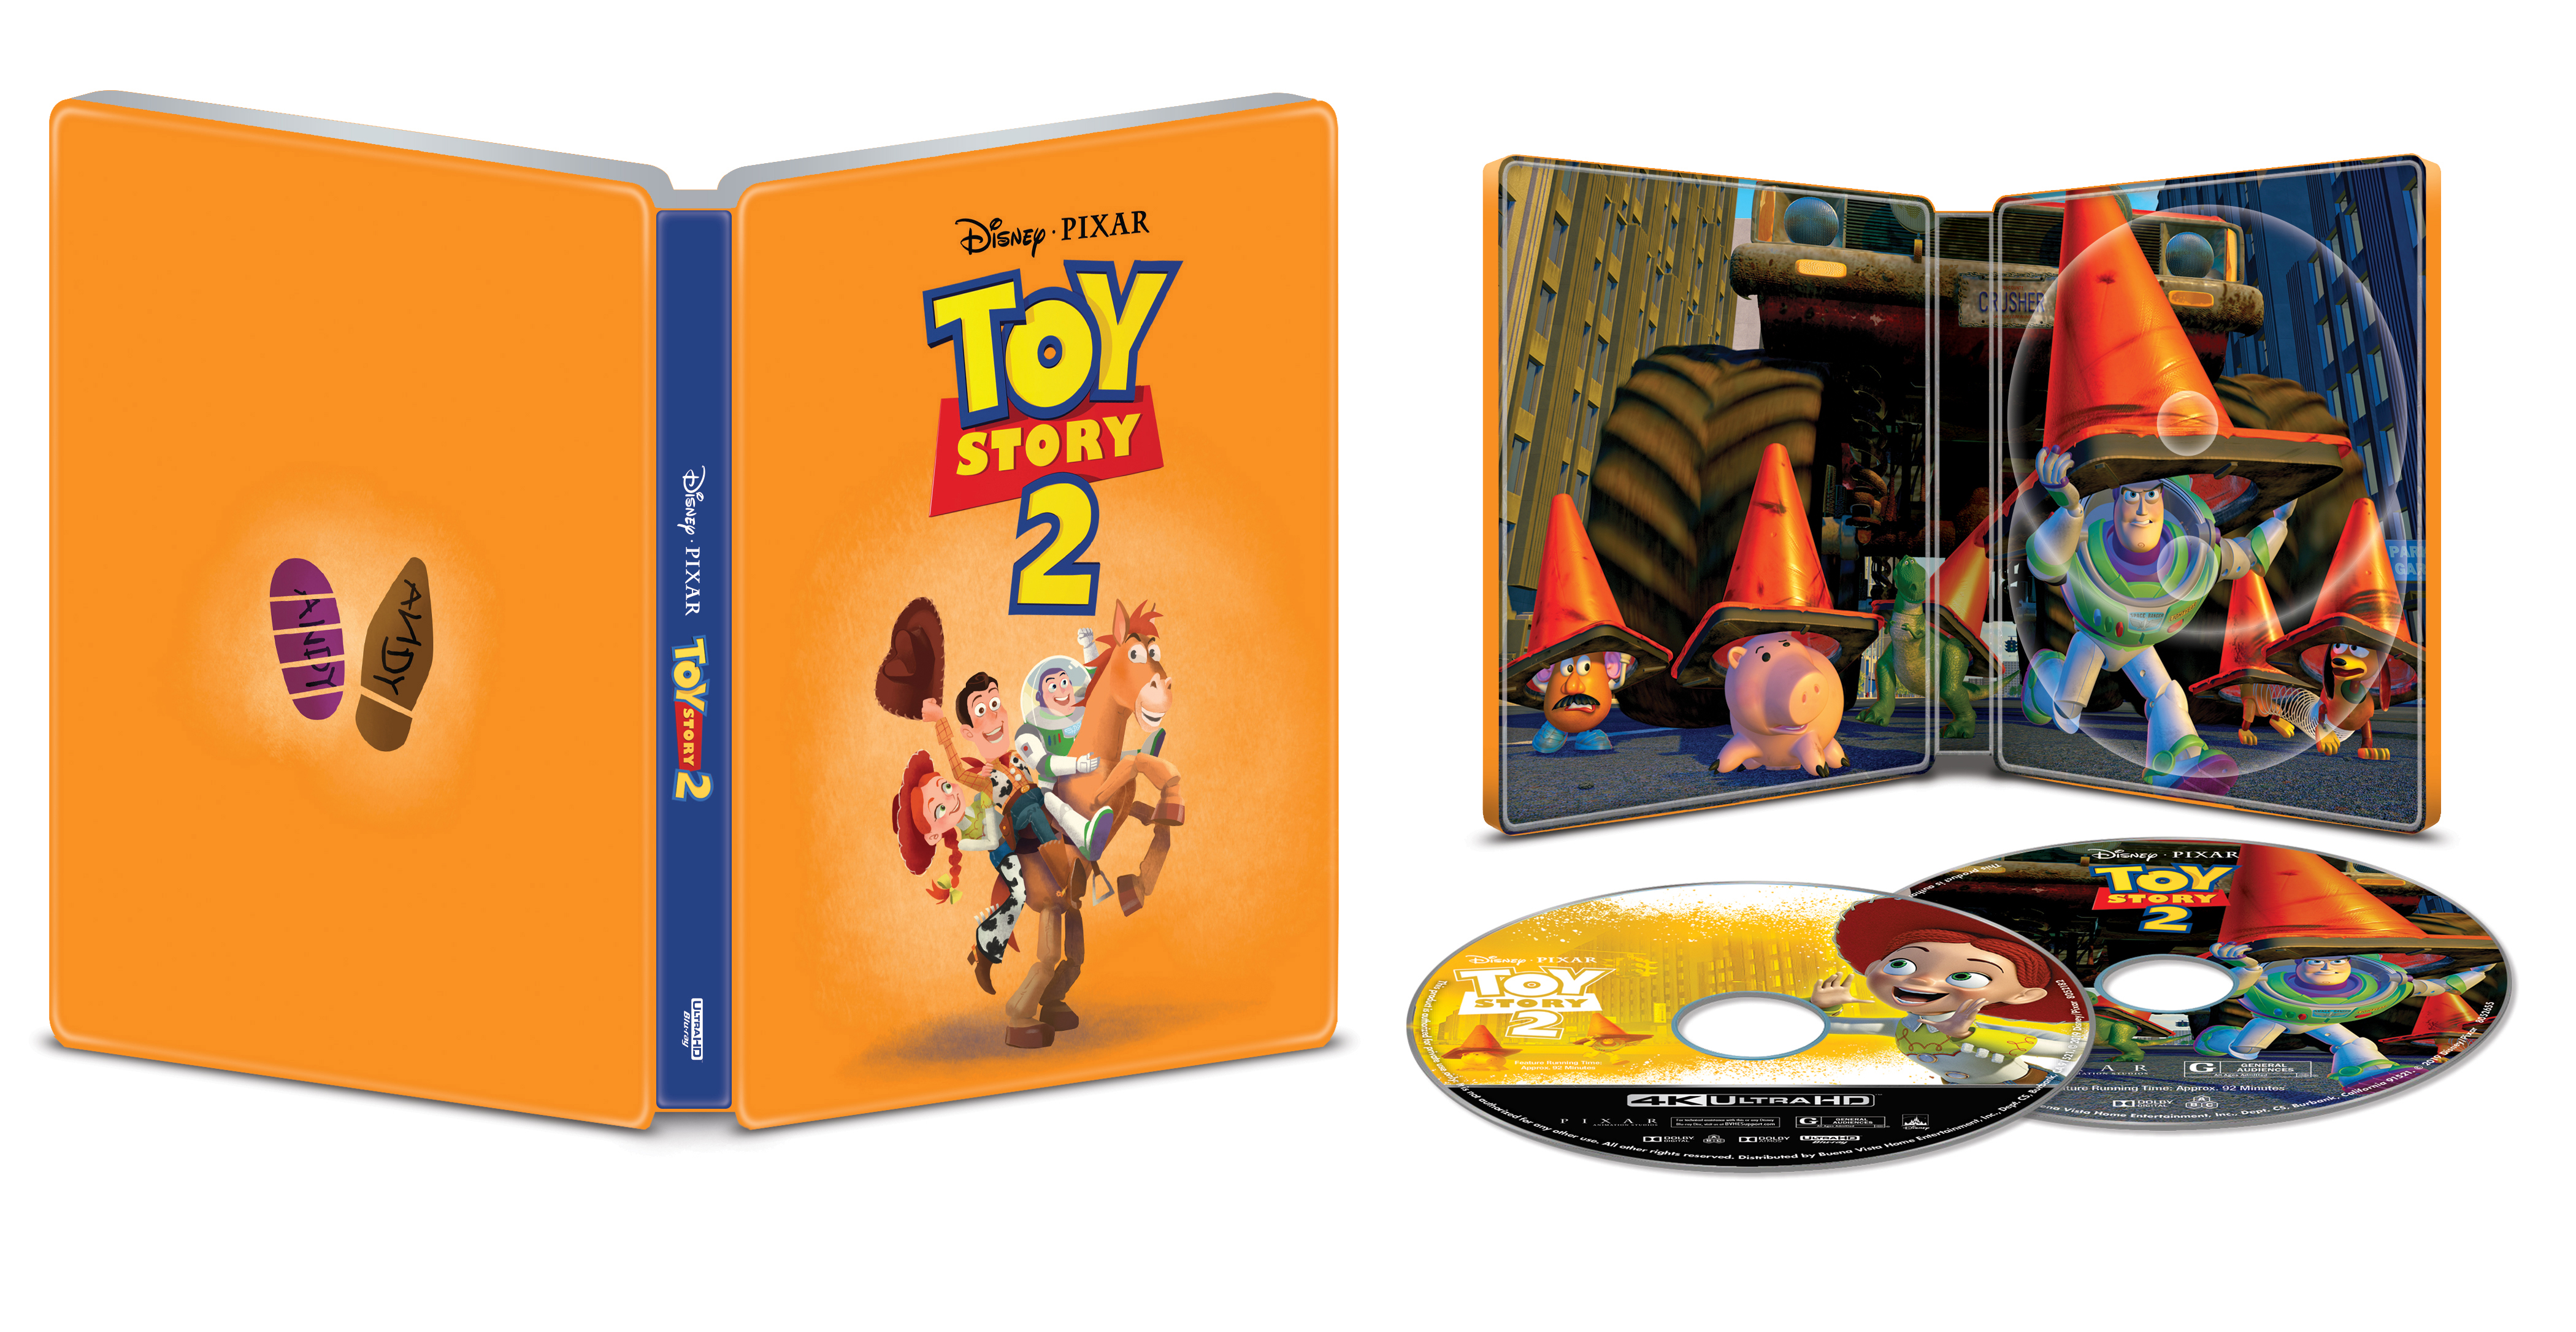 Toy Story 2 [SteelBook] [Includes Digital Copy] [4K Ultra HD Blu